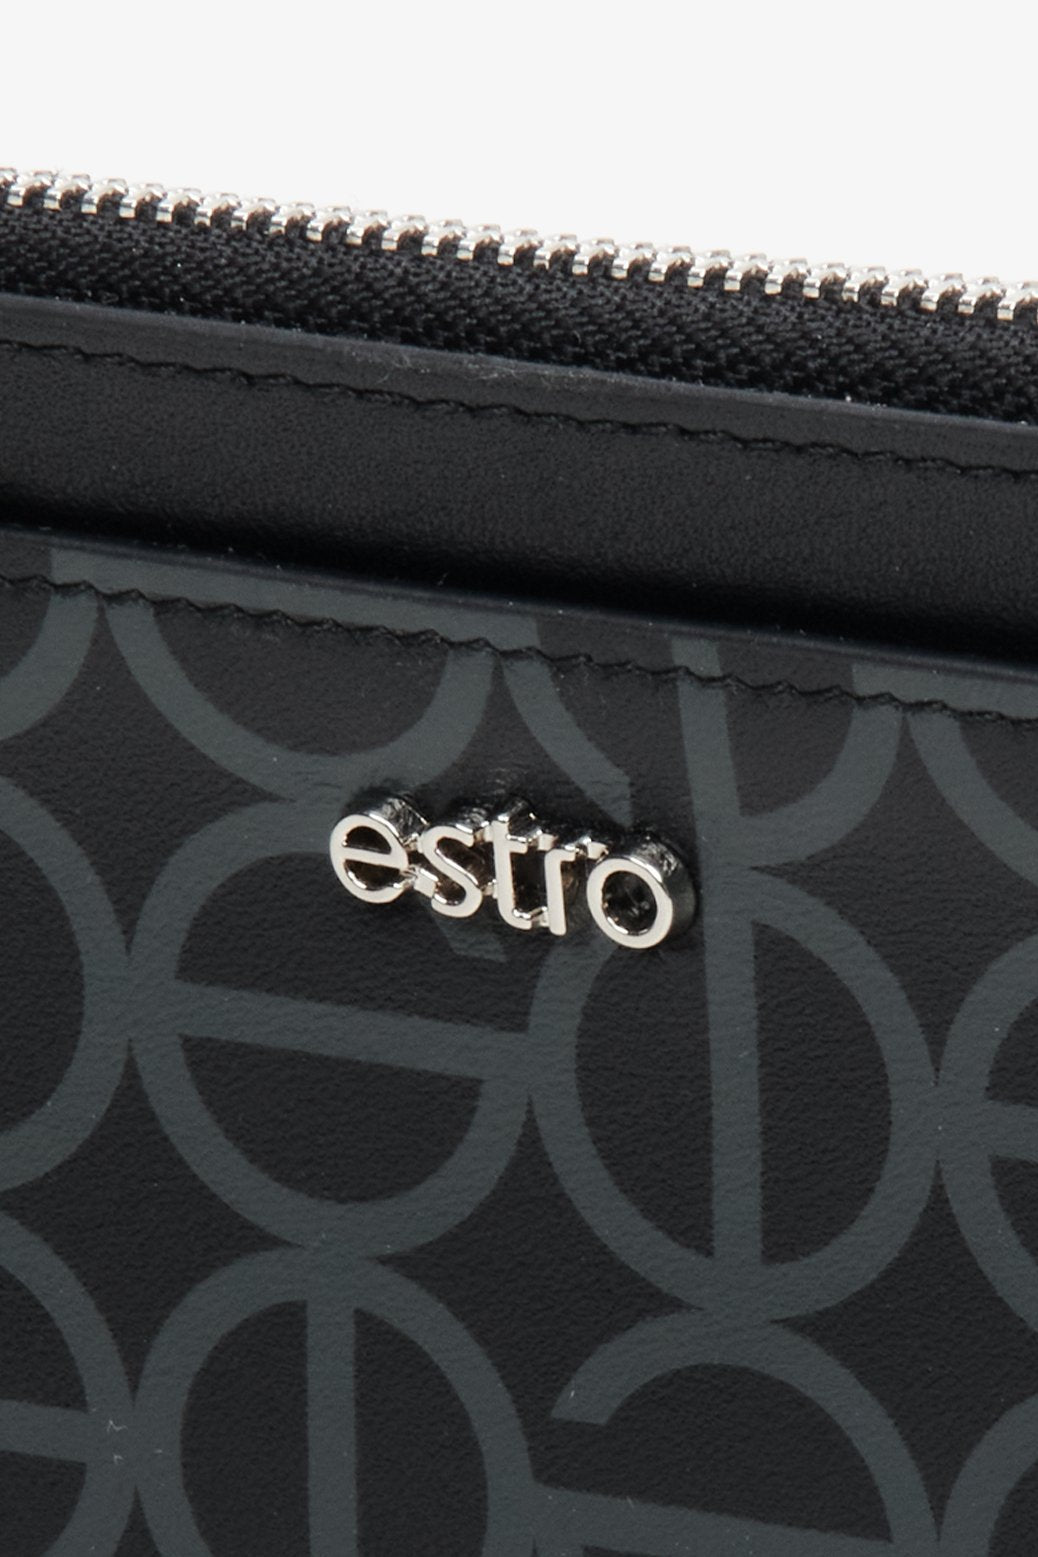 Czarny, damski, duży portfel damski ze skóry naturalnej Estro - zbliżenie na detale.